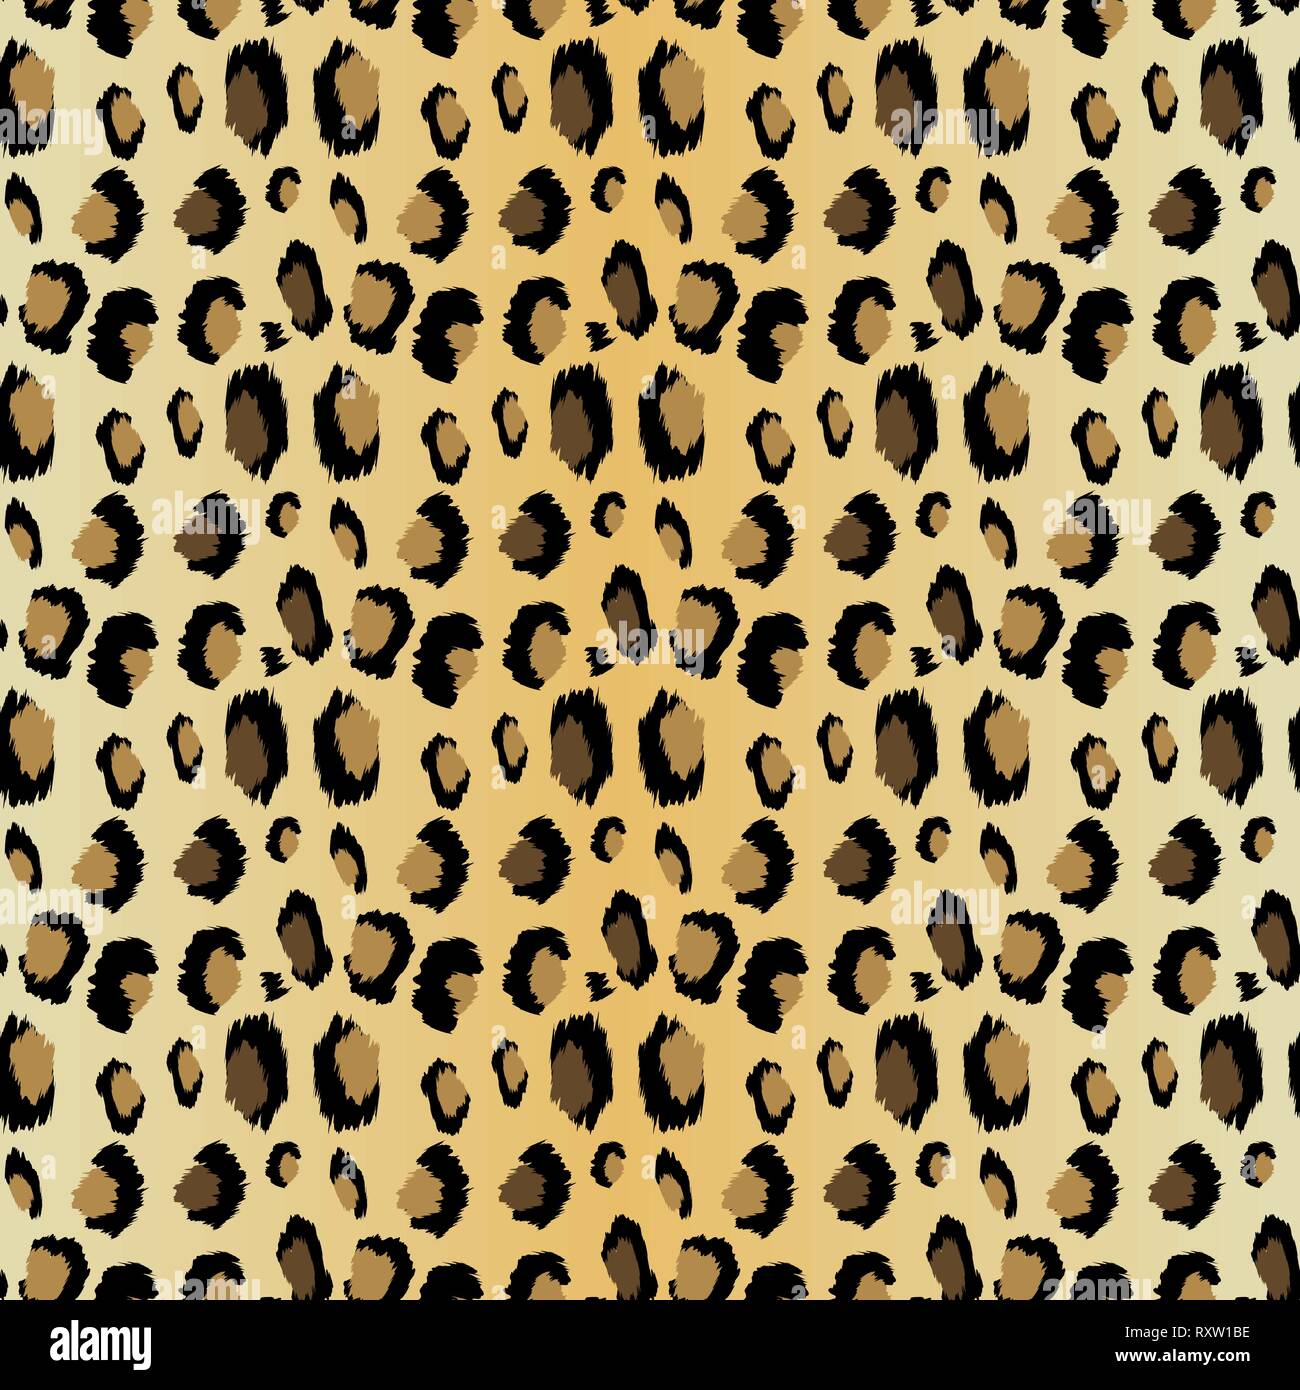 https://c8.alamy.com/compde/rxw1be/leopardenmuster-die-nahtlose-vektor-drucken-realistische-tier-textur-schwarze-und-gelbe-flecken-auf-einem-beigen-hintergrund-abstrakte-sich-wiederholendes-muster-leopard-rxw1be.jpg